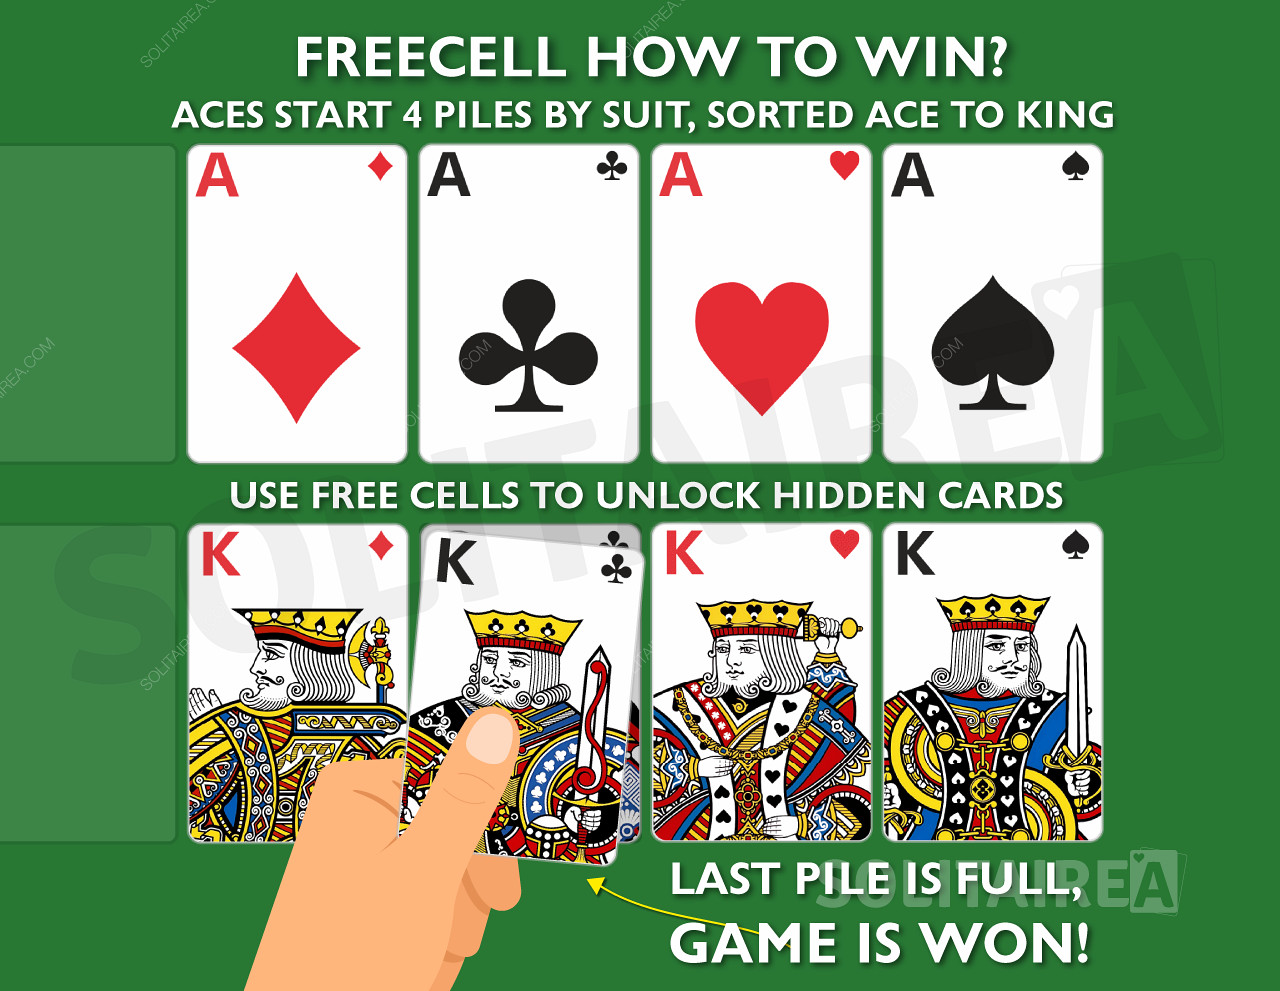 Hur vinner man spelet? Slutför de 4 högarna med likadana kort, sorterade från ess till kung.